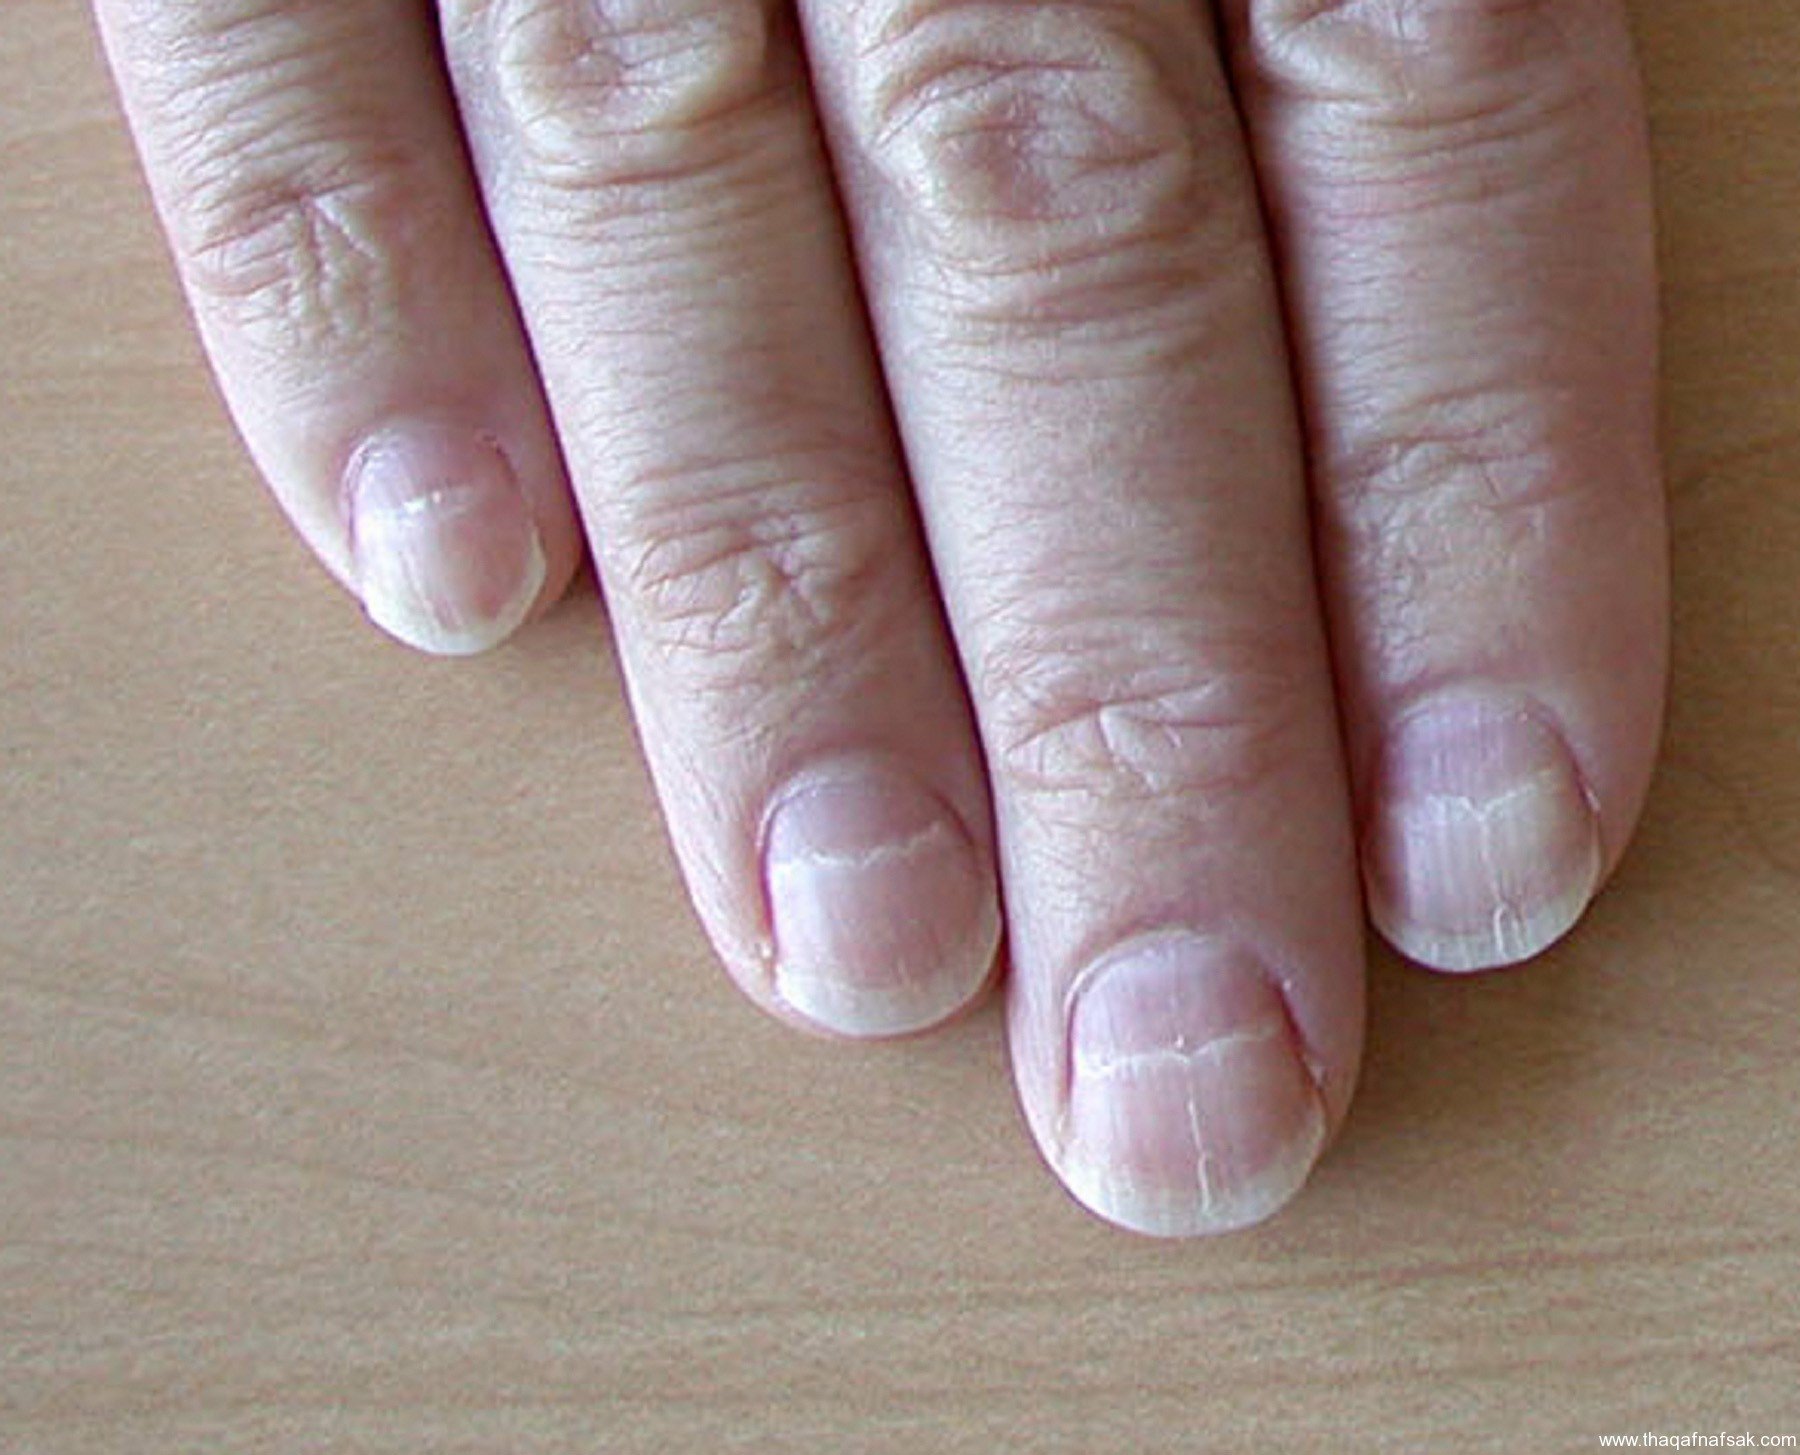 Лунулы. Полосовидная лейконихия. Белые полосы на ногтях рук.